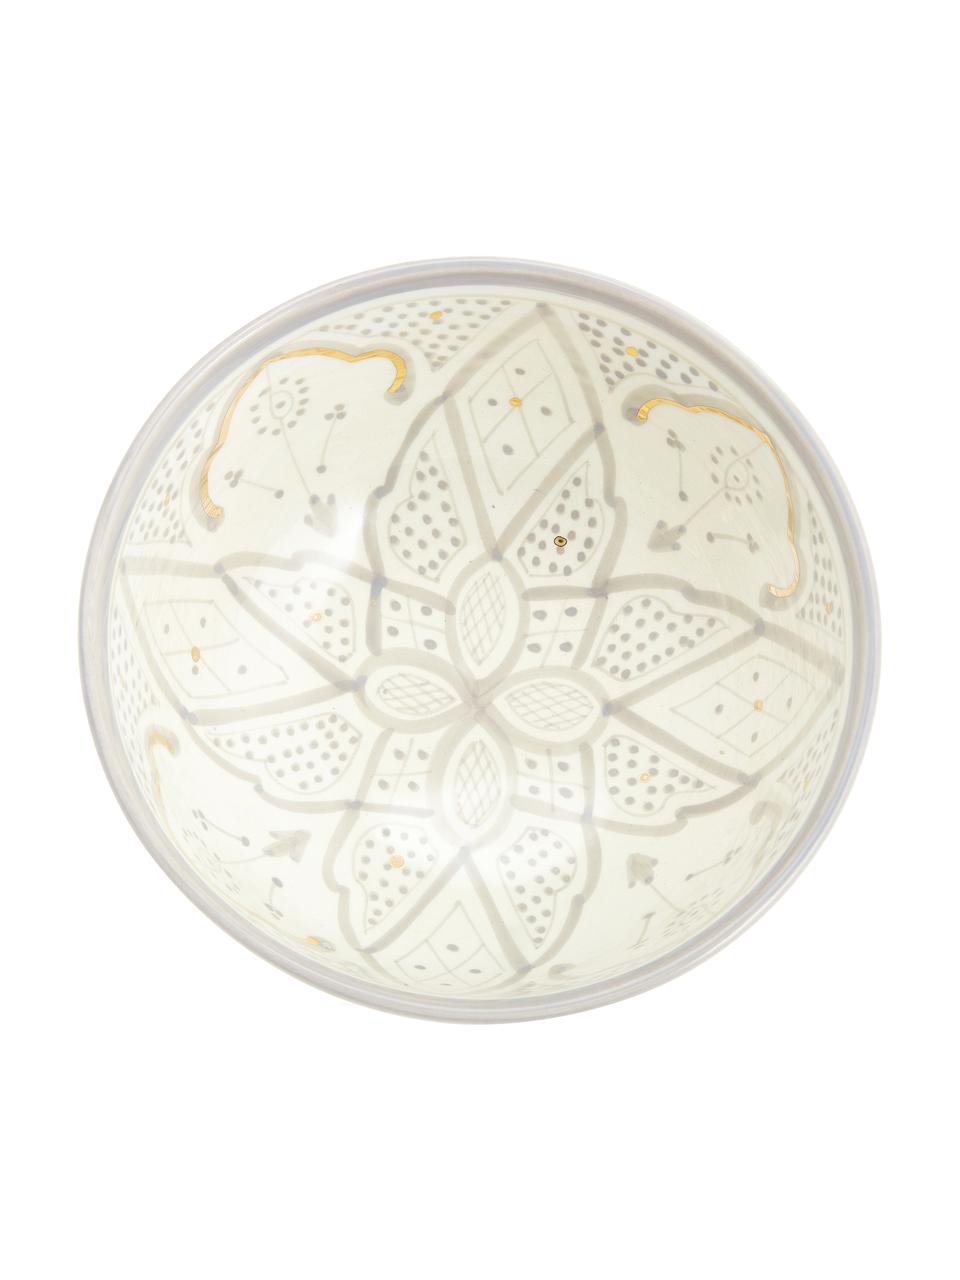 Handgemachte marokkanische Salatschüssel Beldi mit goldenen Details, Ø 25 cm, Keramik, Hellgrau, Cremefarben, Gold, Ø 25 x H 12 cm